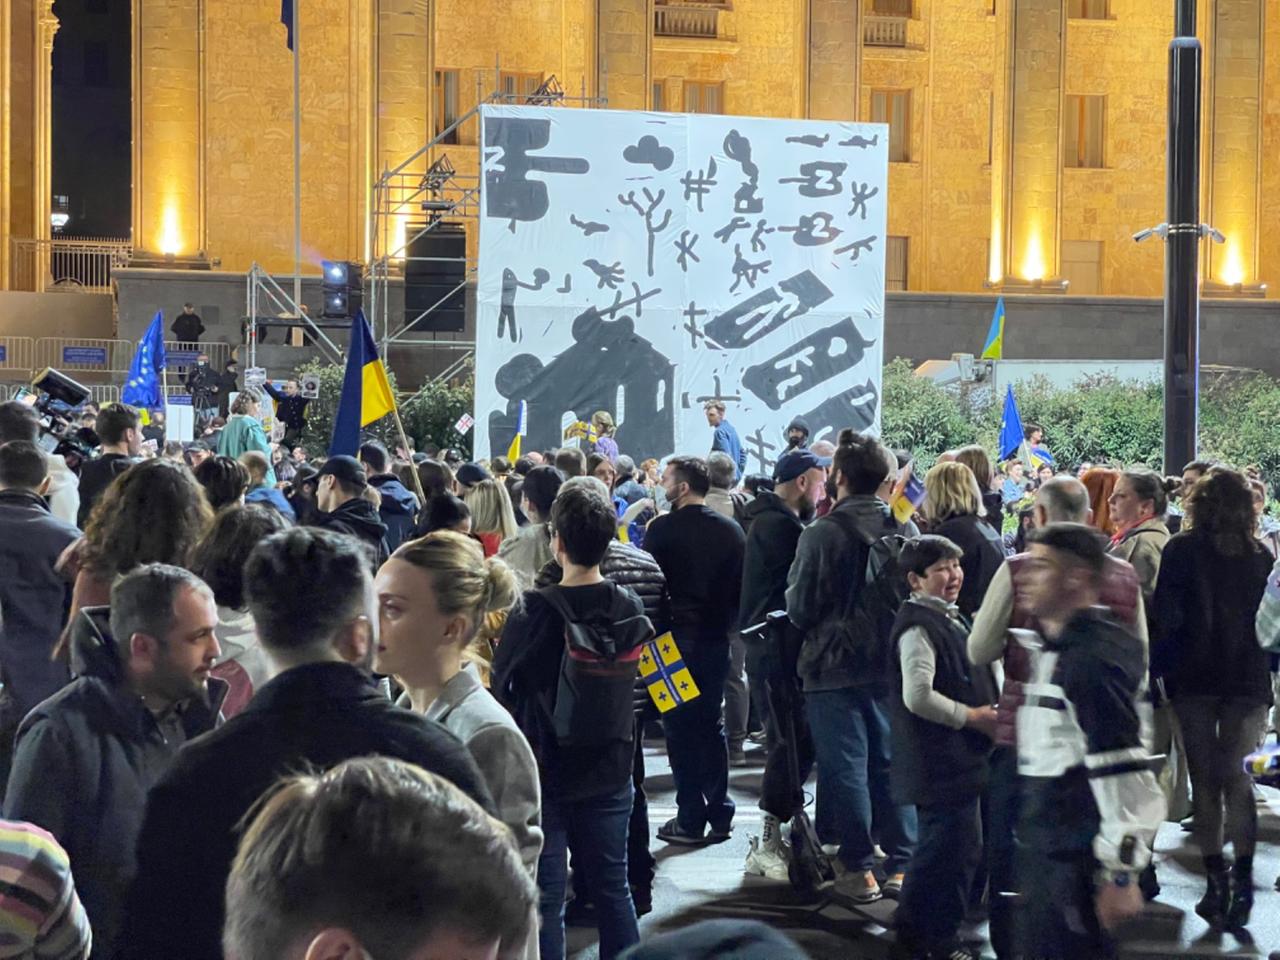 Antikriegsdemonstration mit Yoffes Bild „No War“ vor dem georgischen Parlament